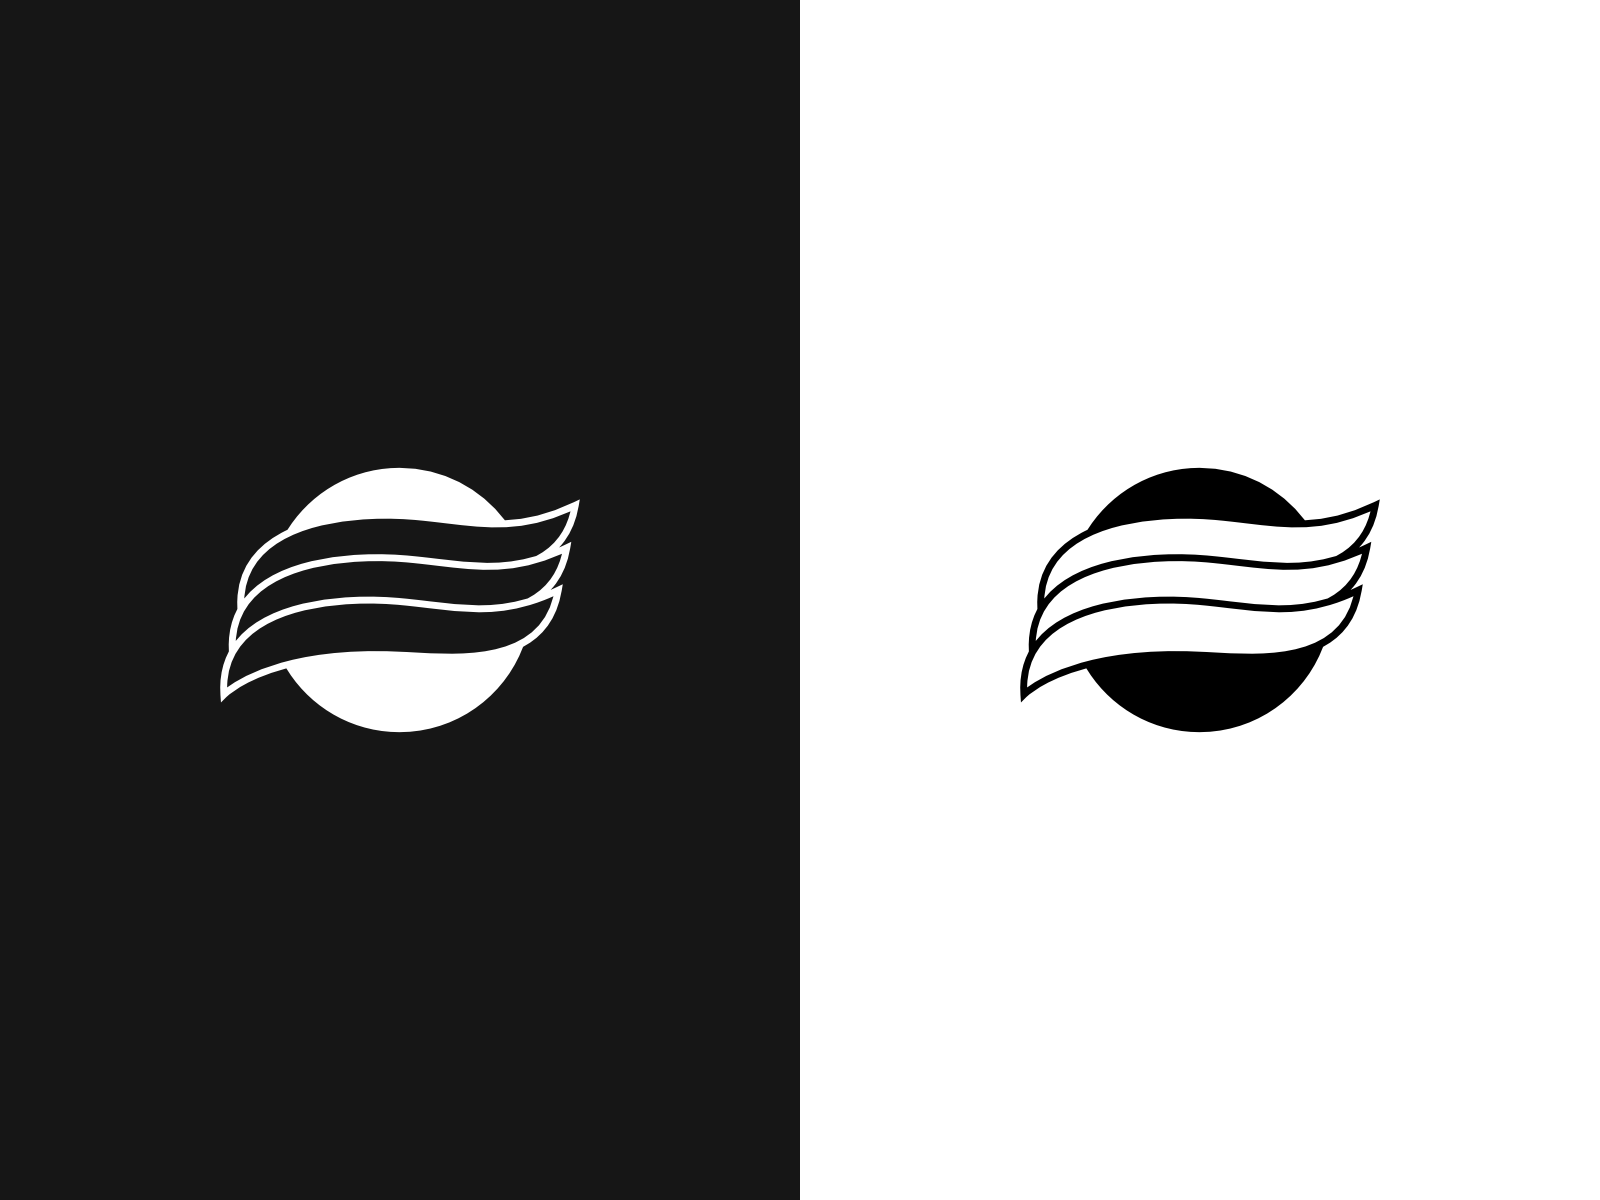 E Monogram logo by JAARGIB_DESIGN on Dribbble